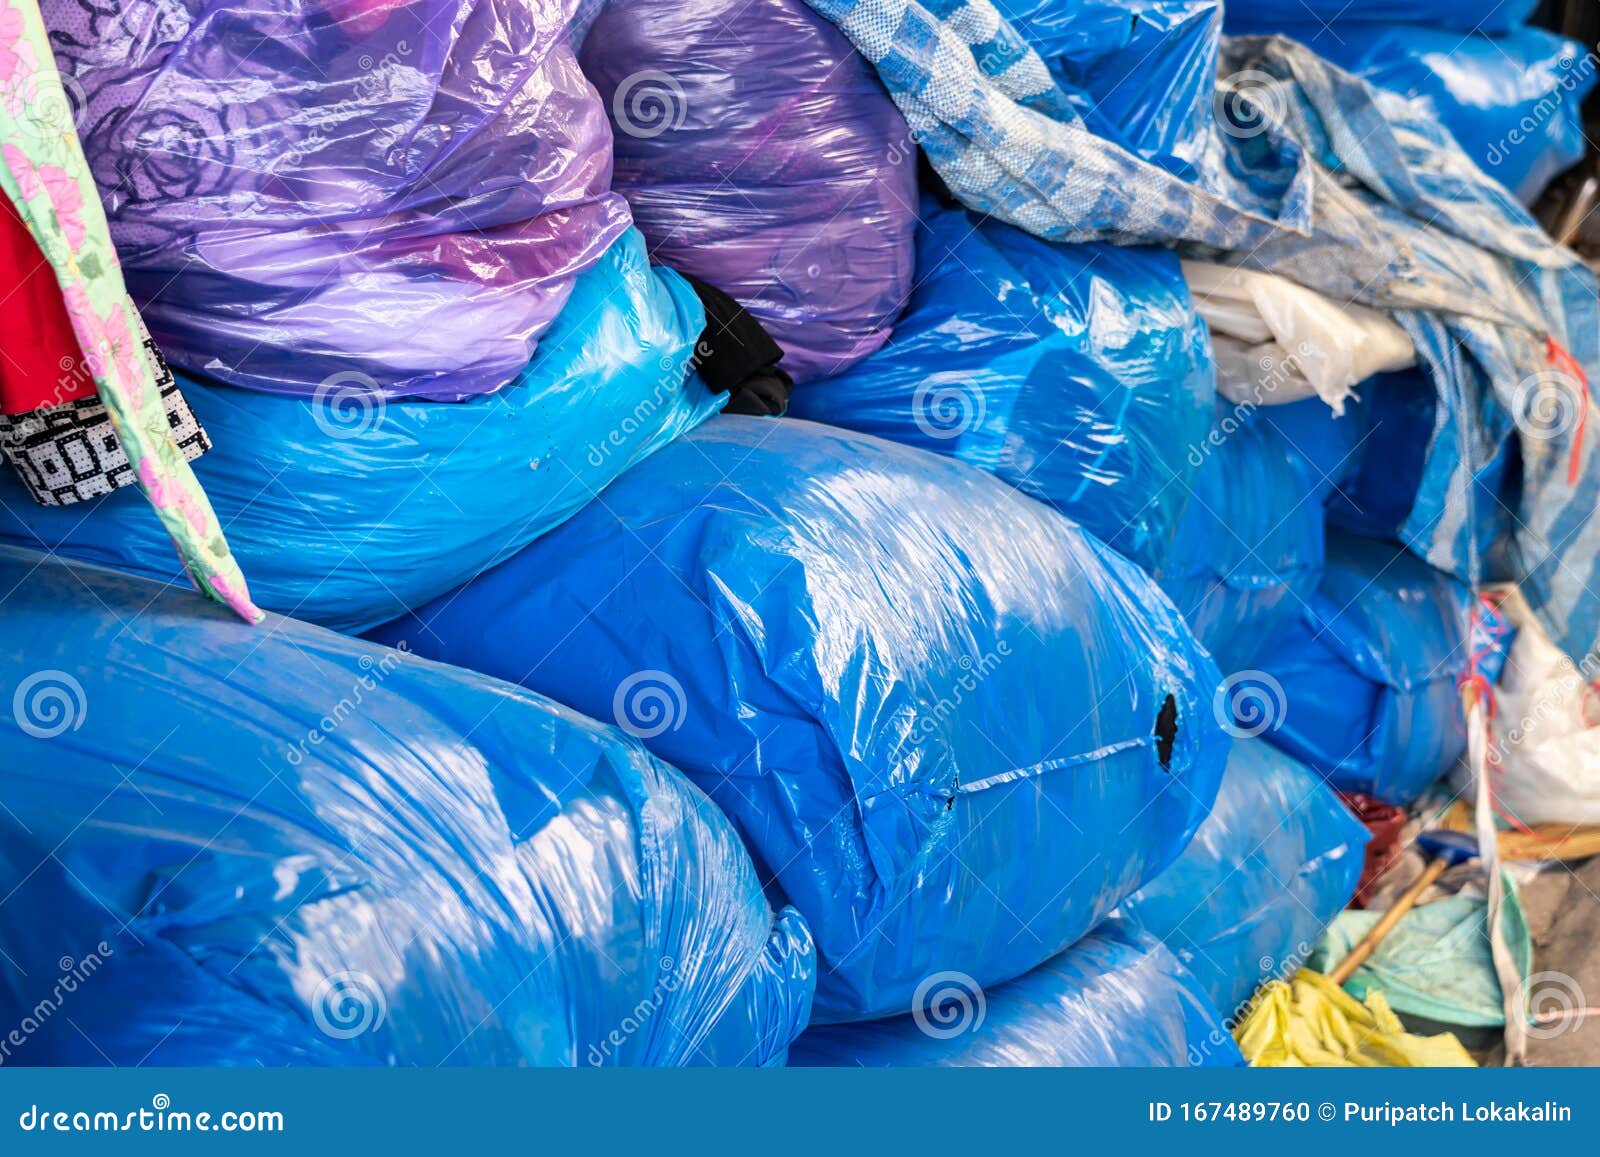 Grandes Bolsas Azules De Plástico Para Guardar Ropa En La Tienda De Ropa  Foto de archivo - Imagen de venta, tela: 167489760